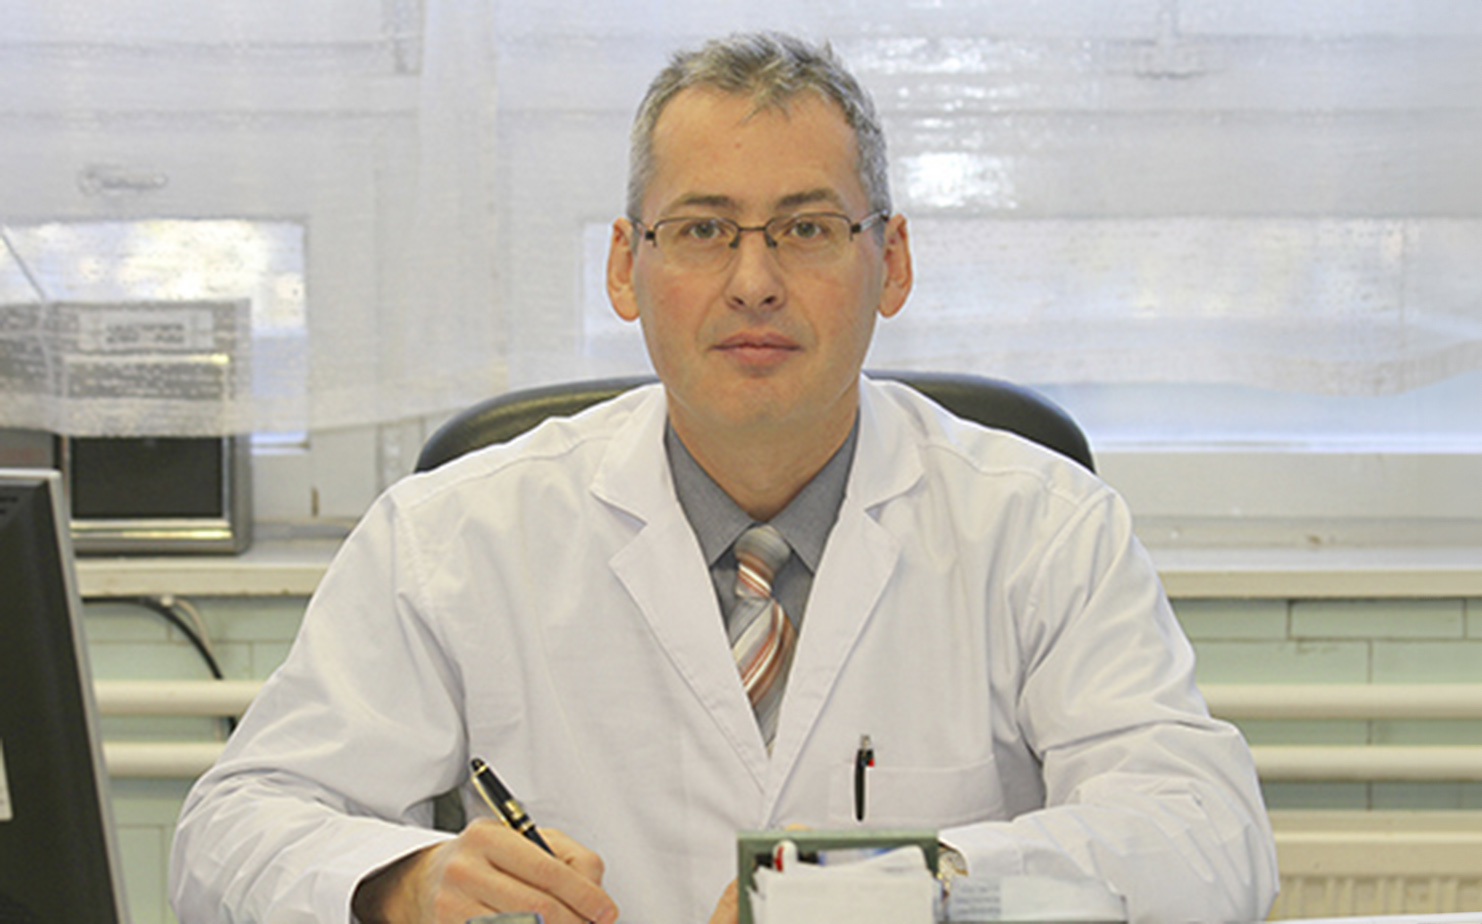 Dr. Zsákai Zsolt